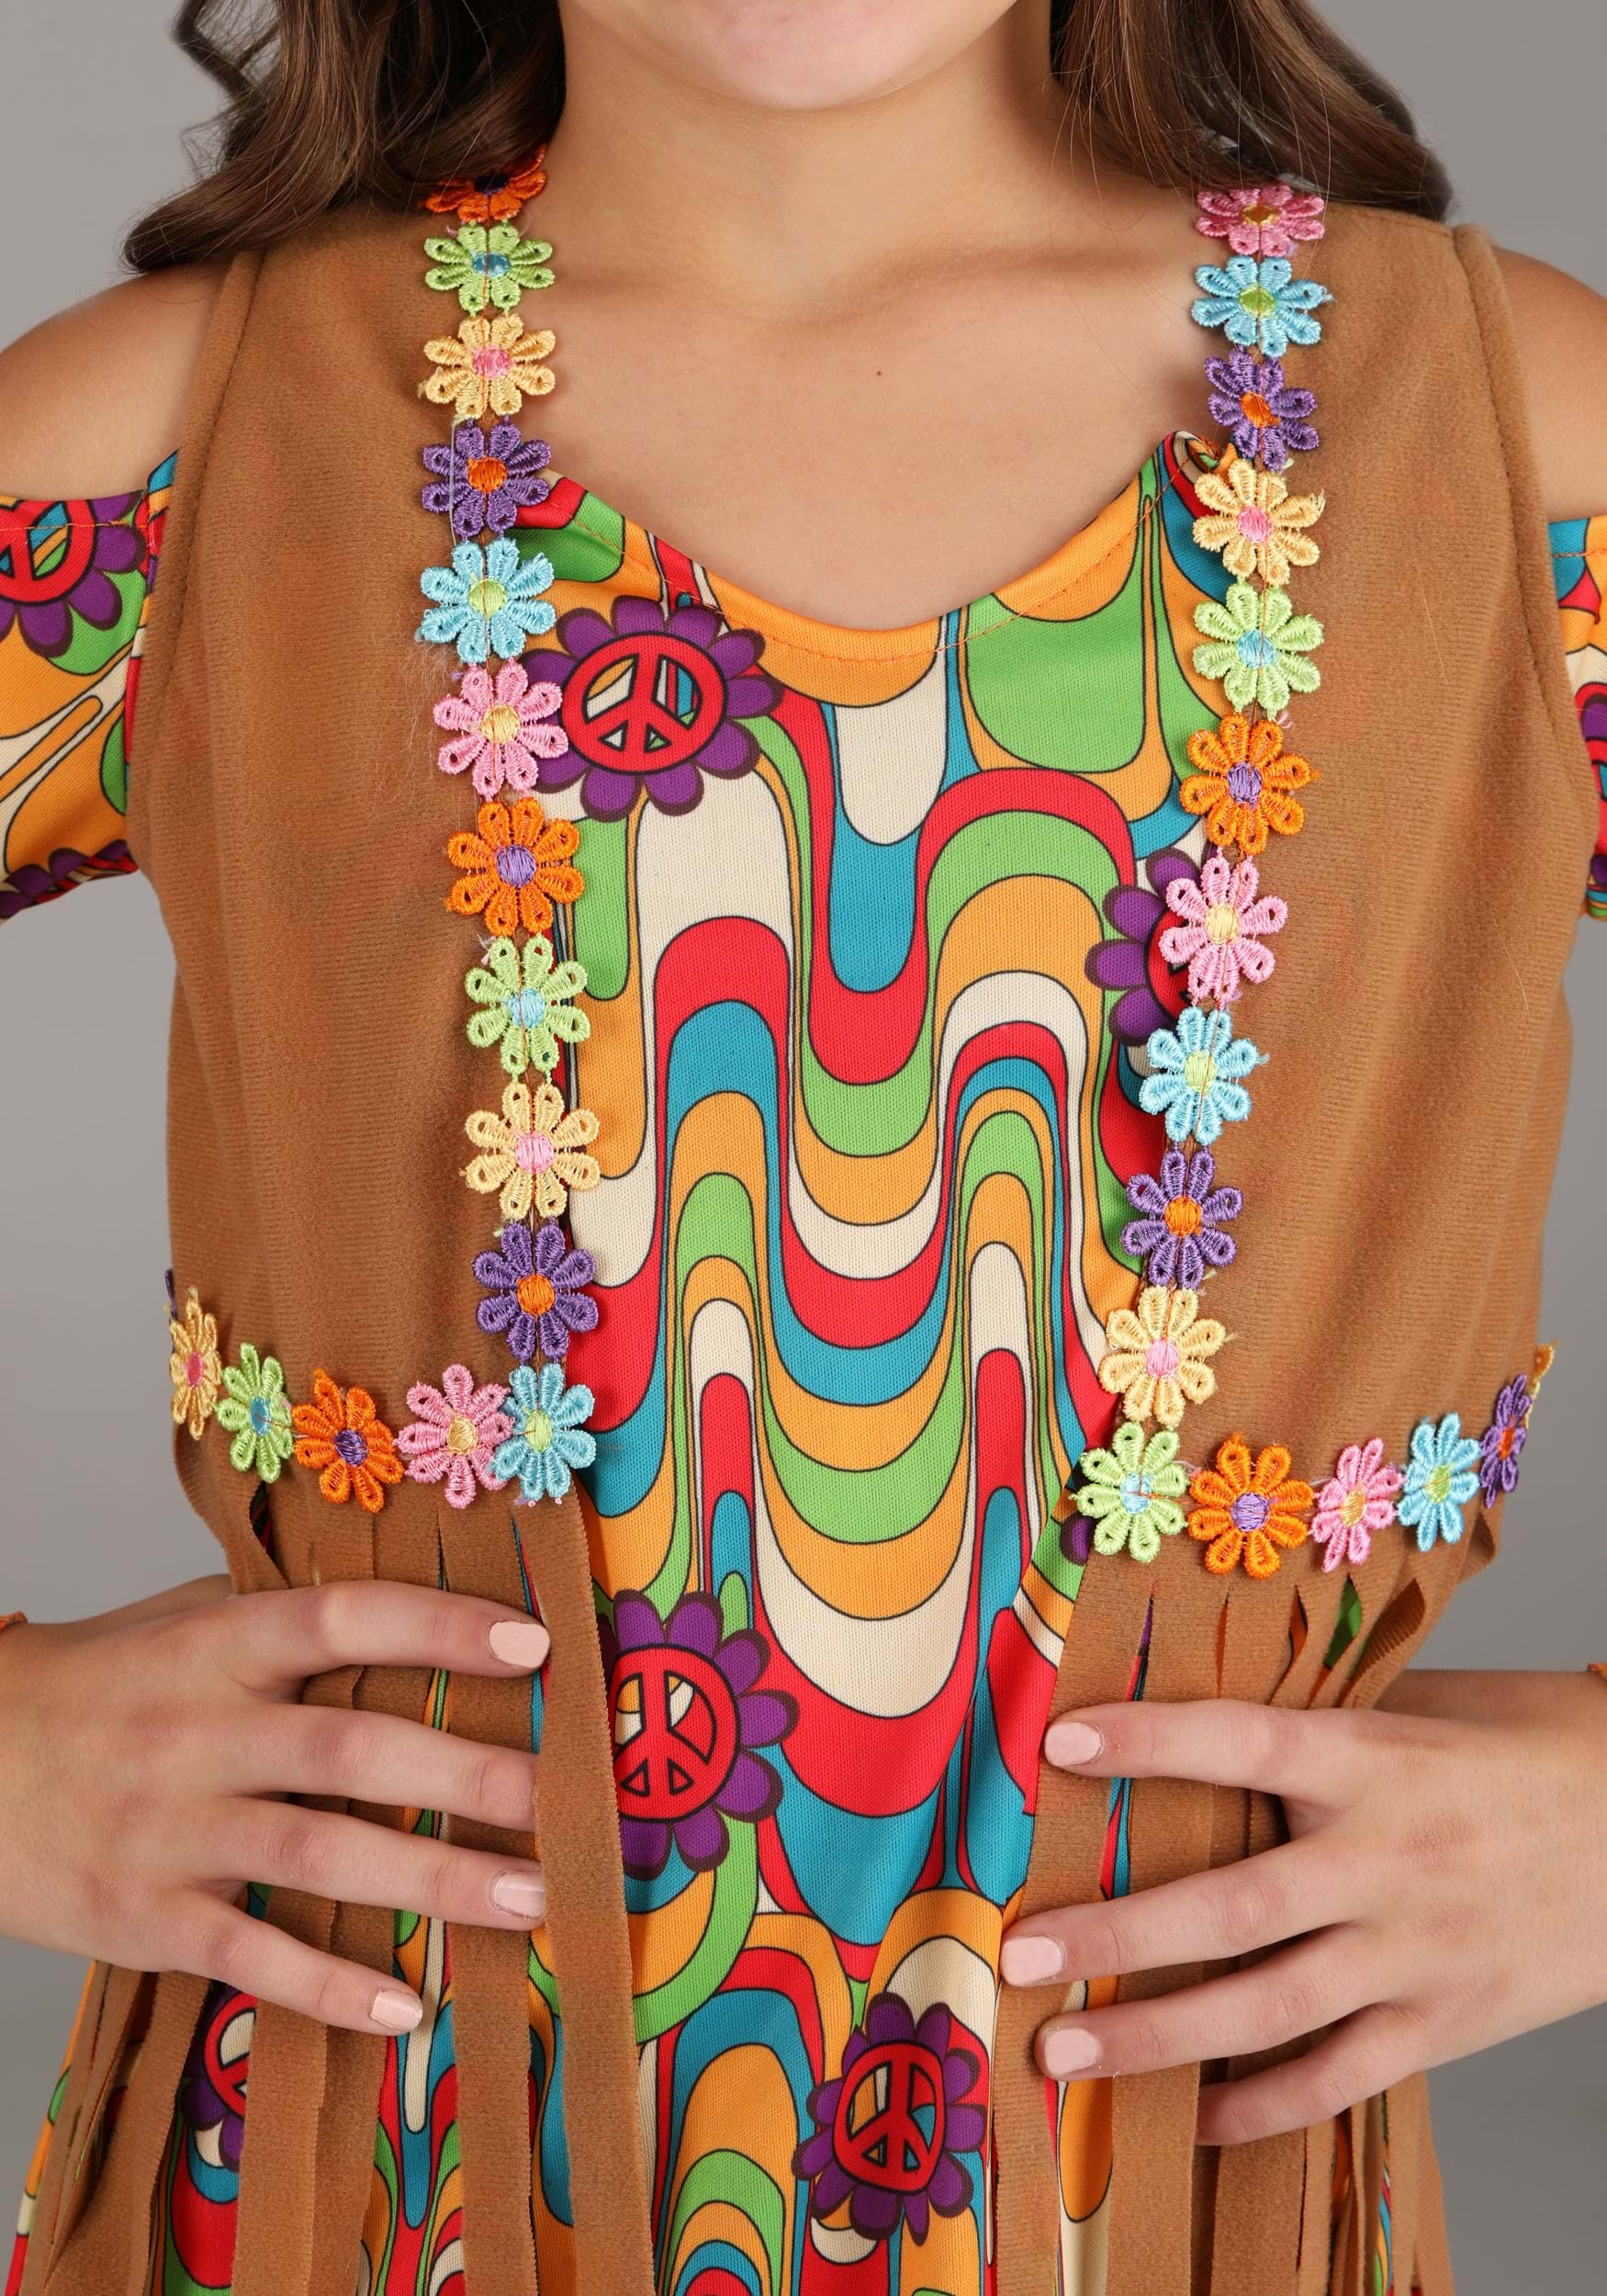 Woodstock Flower Hippie Costume For Girls